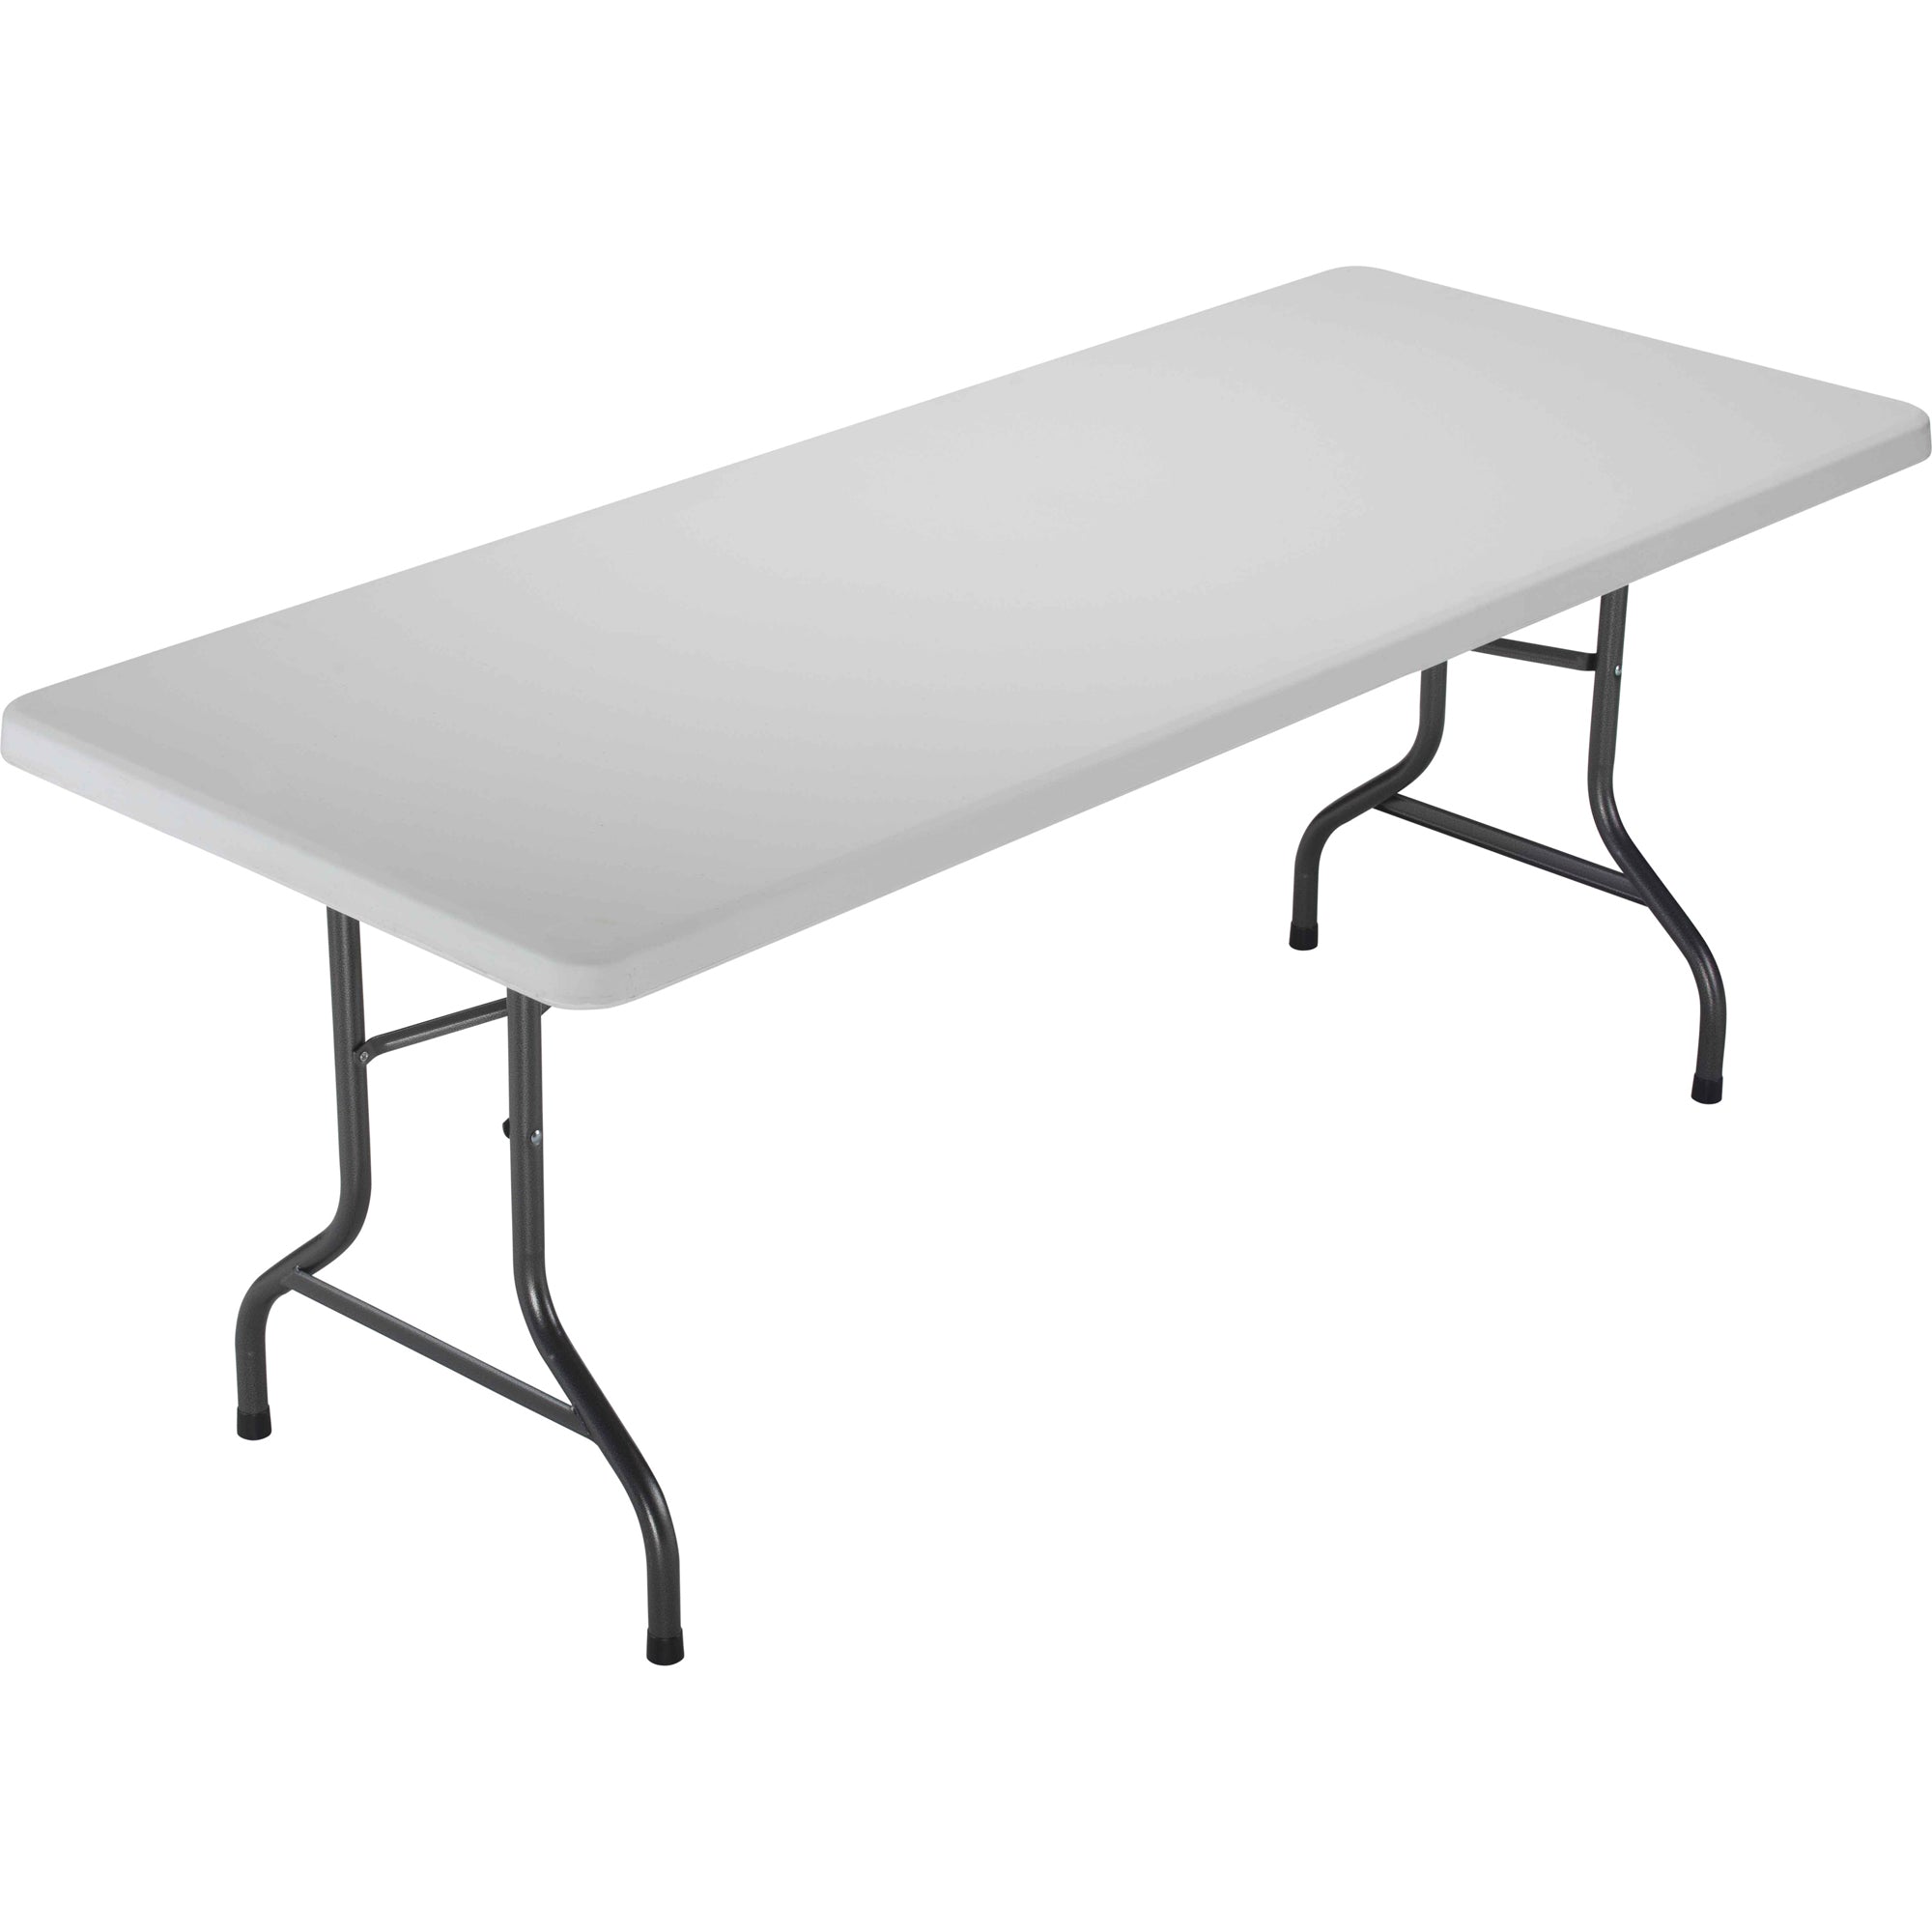 Morph Folding Rectangular Table